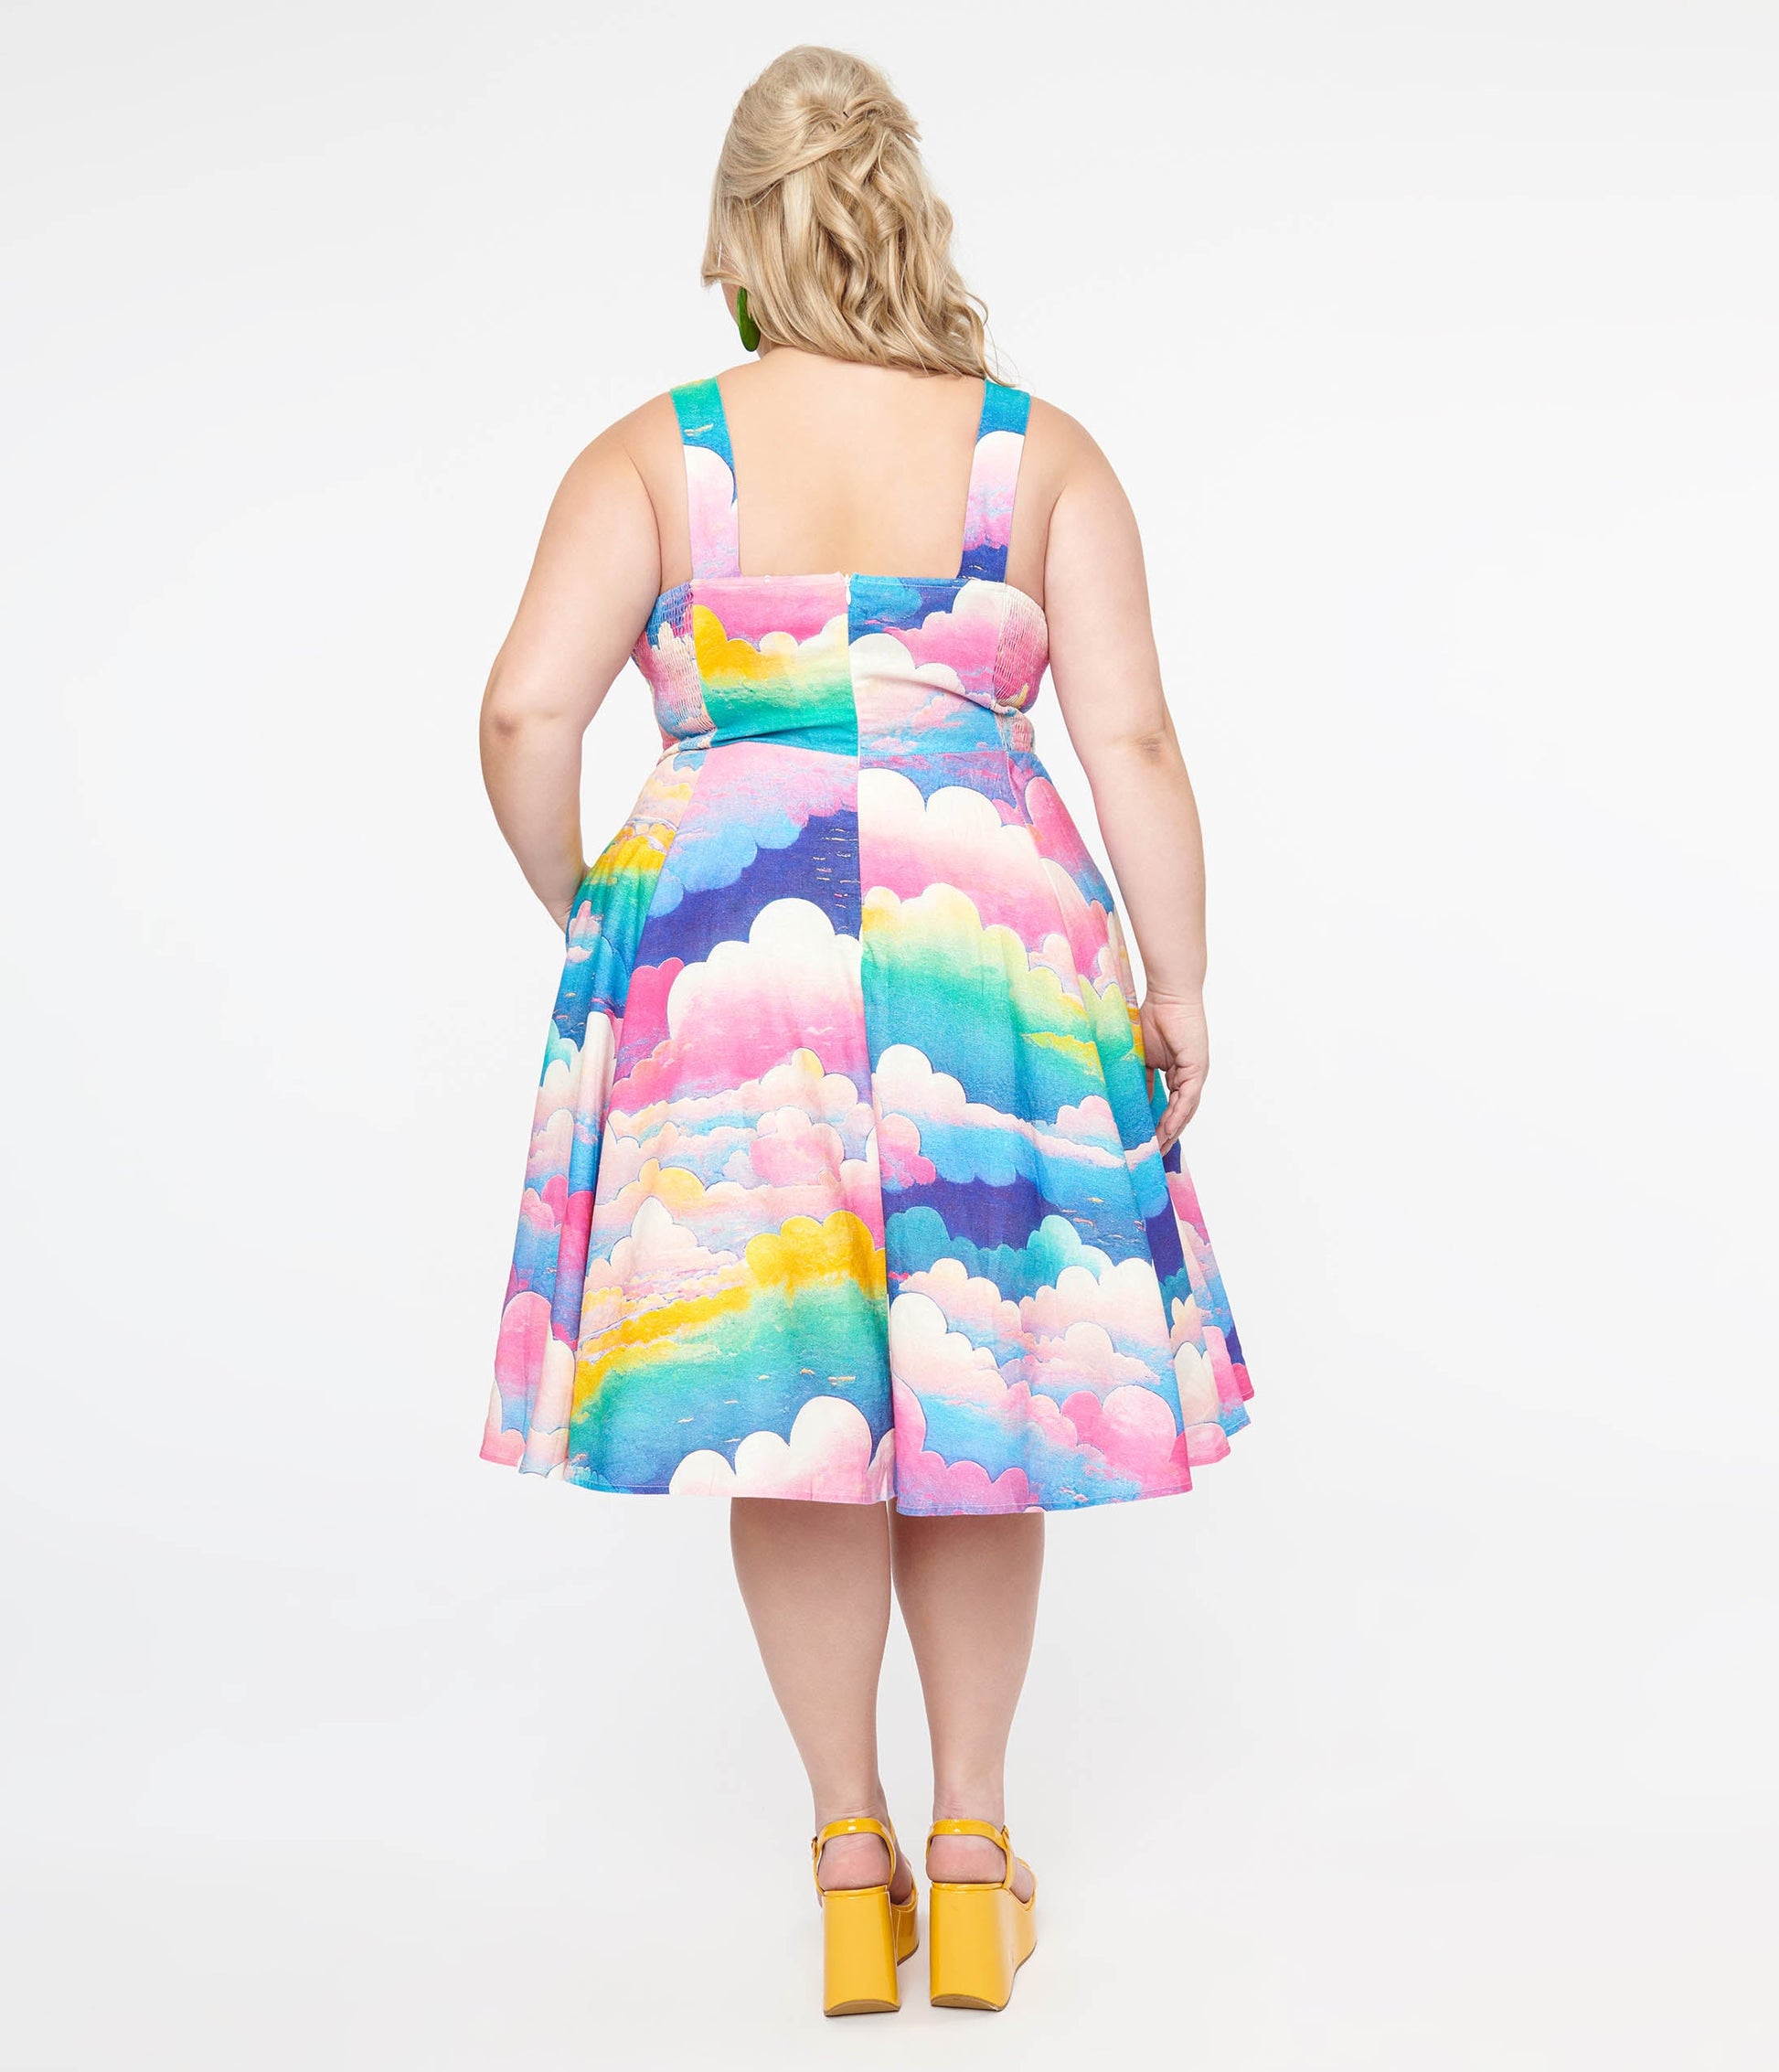 Plus Size 1950s Pink & Rainbow Cloud Print Heidi Fit & Flare Dress - Unique Vintage - Womens, DRESSES, SWING